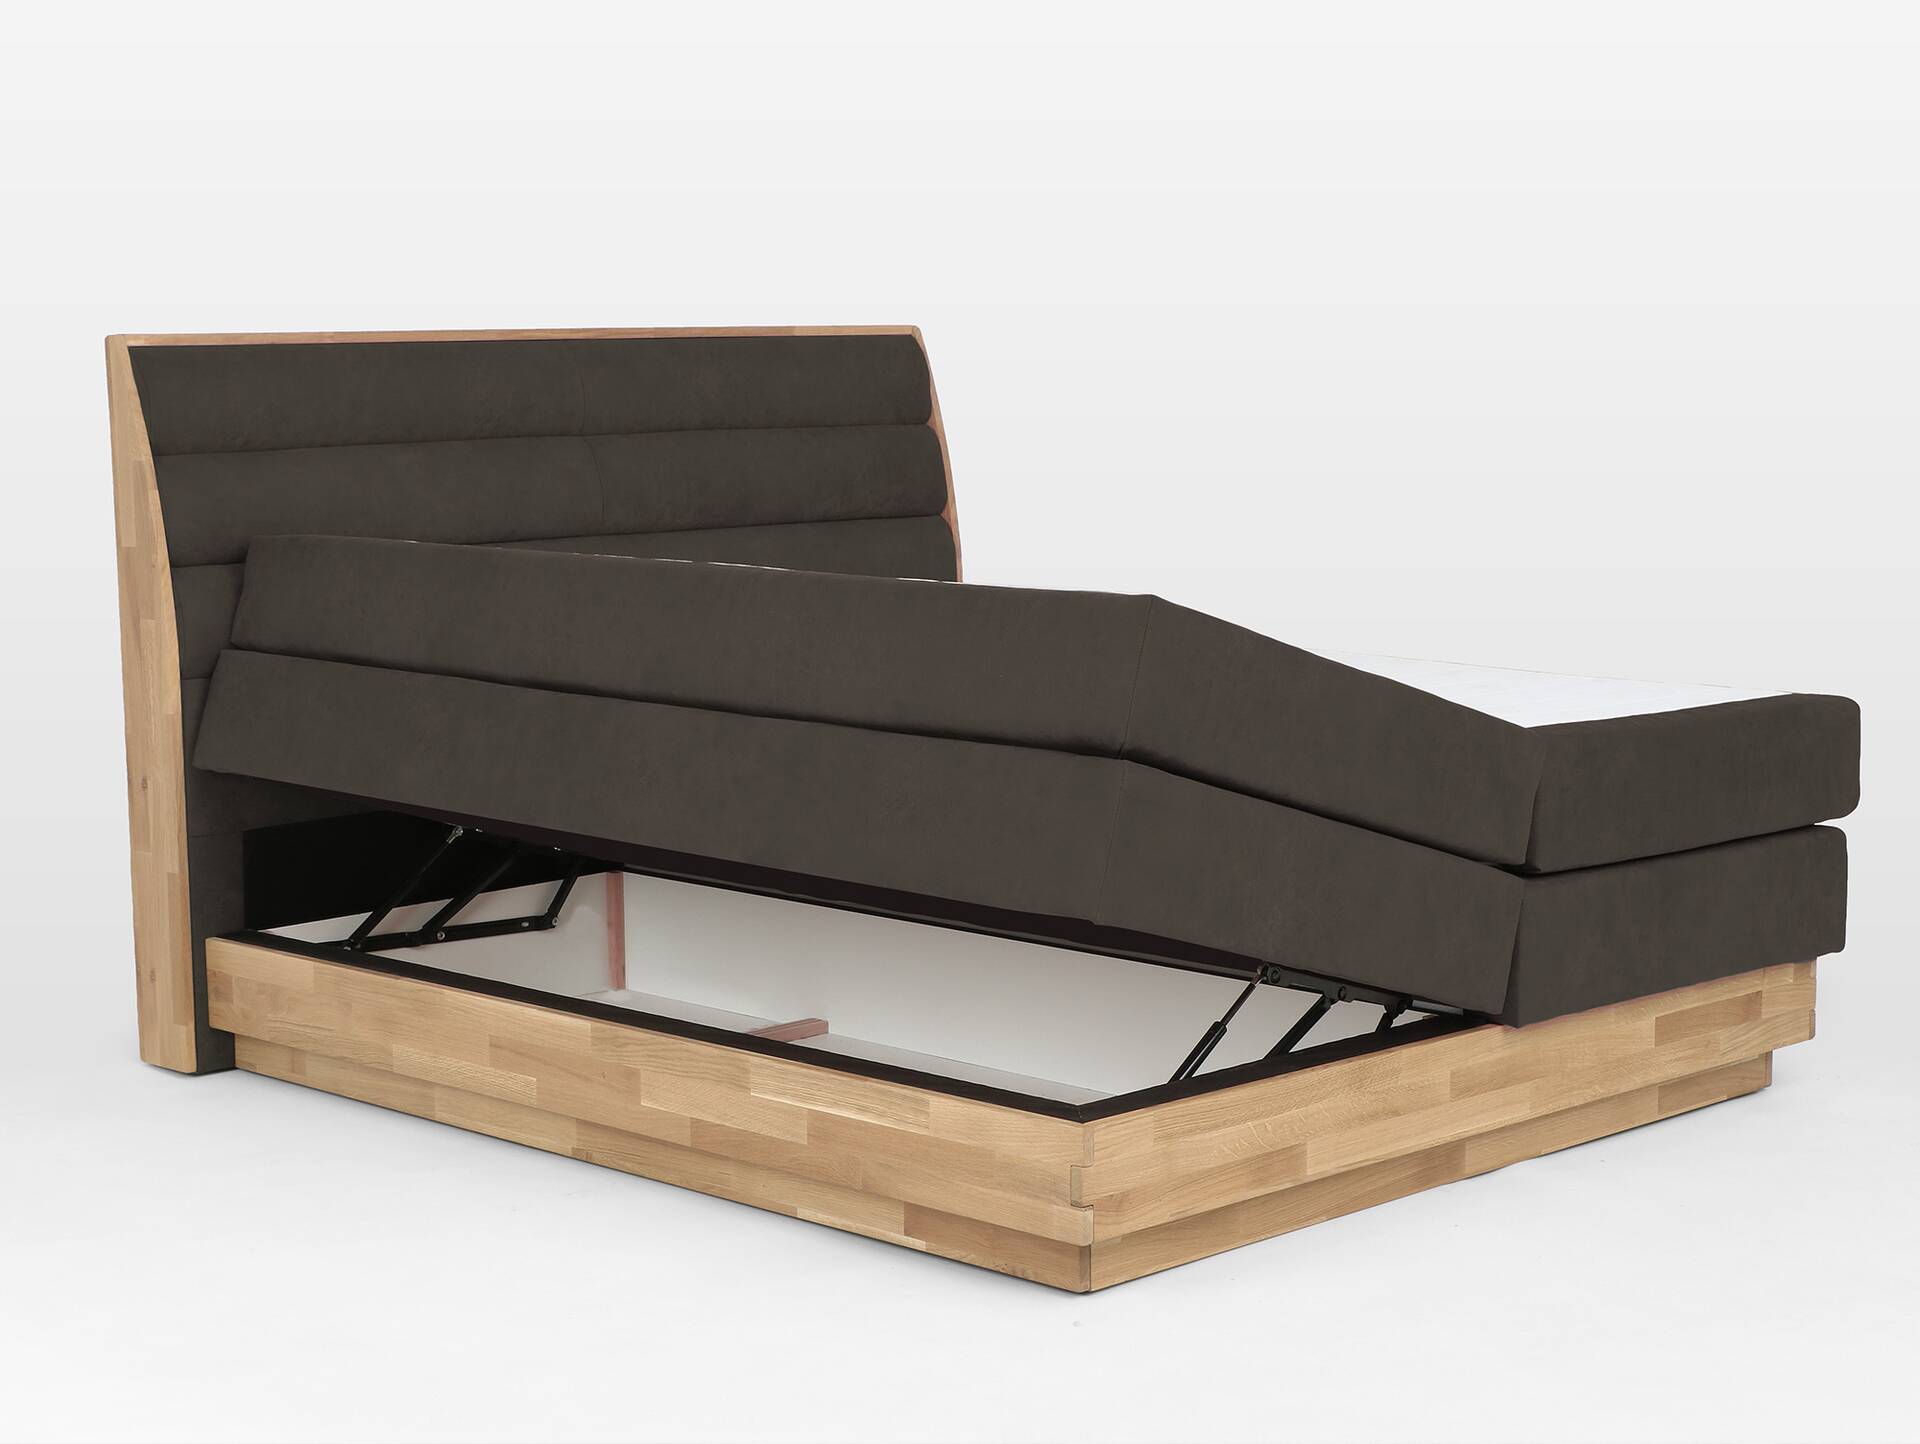 MAILO Boxspringbett mit Bettkasten, Material Massivholz Eiche/ Bezug Stoff in 2 Farben 160 x 200 cm | Braun